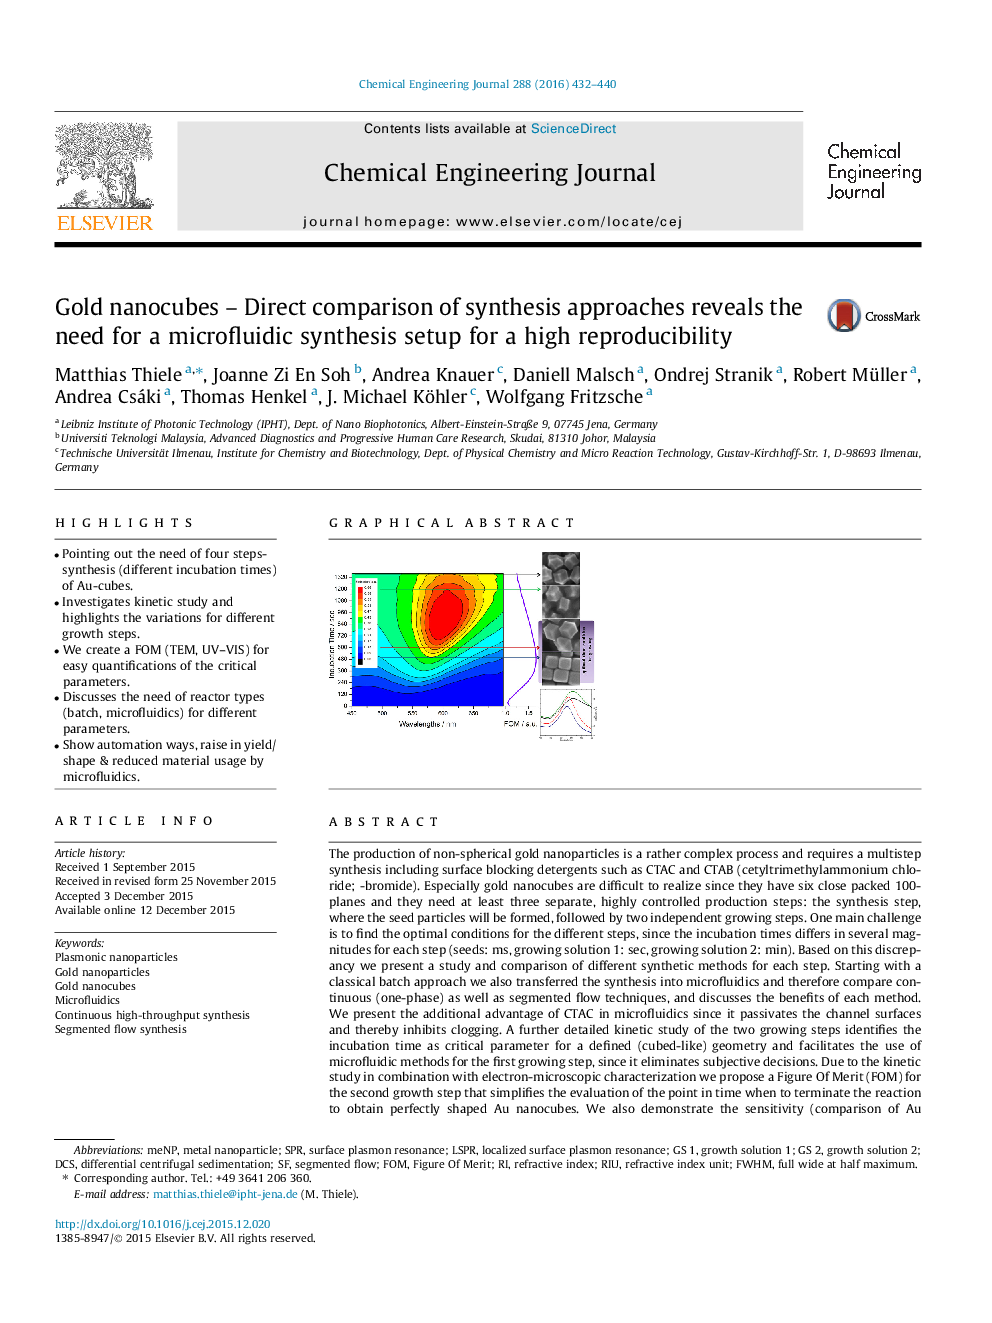 نانوکابولهای طلایی - مقایسه مستقیم روشهای سنتز نشان دهنده نیاز به تنظیم سنتز میکرو فلوئیدی برای بازدهی بالا است 